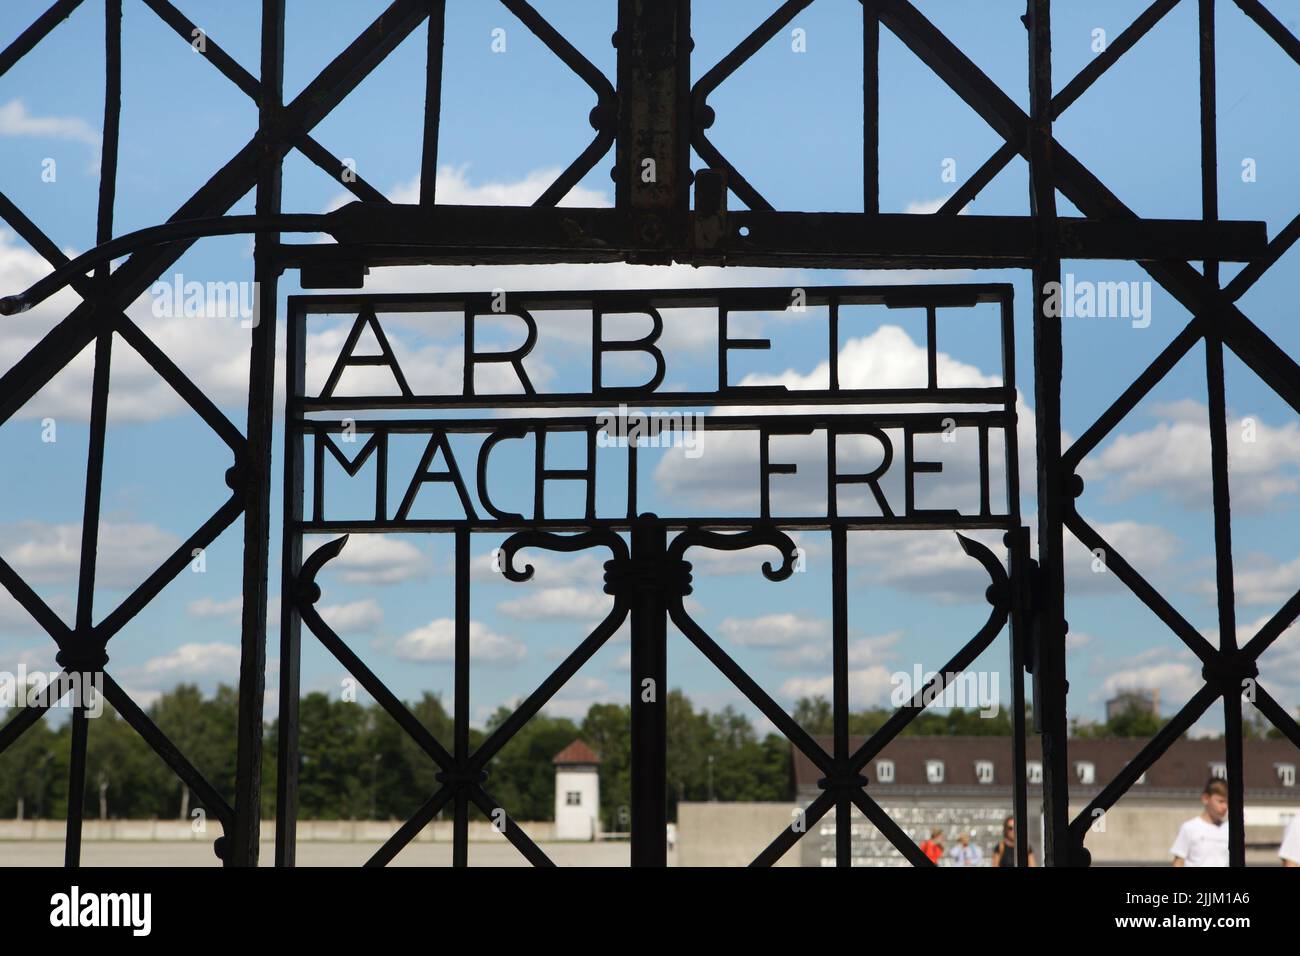 El eslogan nazi 'Arbeit Macht Frei' ('El trabajo te libera') en la puerta del edificio Jourhaus a través del cual los prisioneros fueron ingresados en el antiguo campo de concentración de Dachau (Konzentrationslager Dachau), ahora sitio conmemorativo del campo de concentración de Dachau (KZ-Gedenkstätte Dachau) en Dachau, cerca de Munich, Baviera, Alemania. La puerta original se exhibe en el museo ahora. Foto de stock